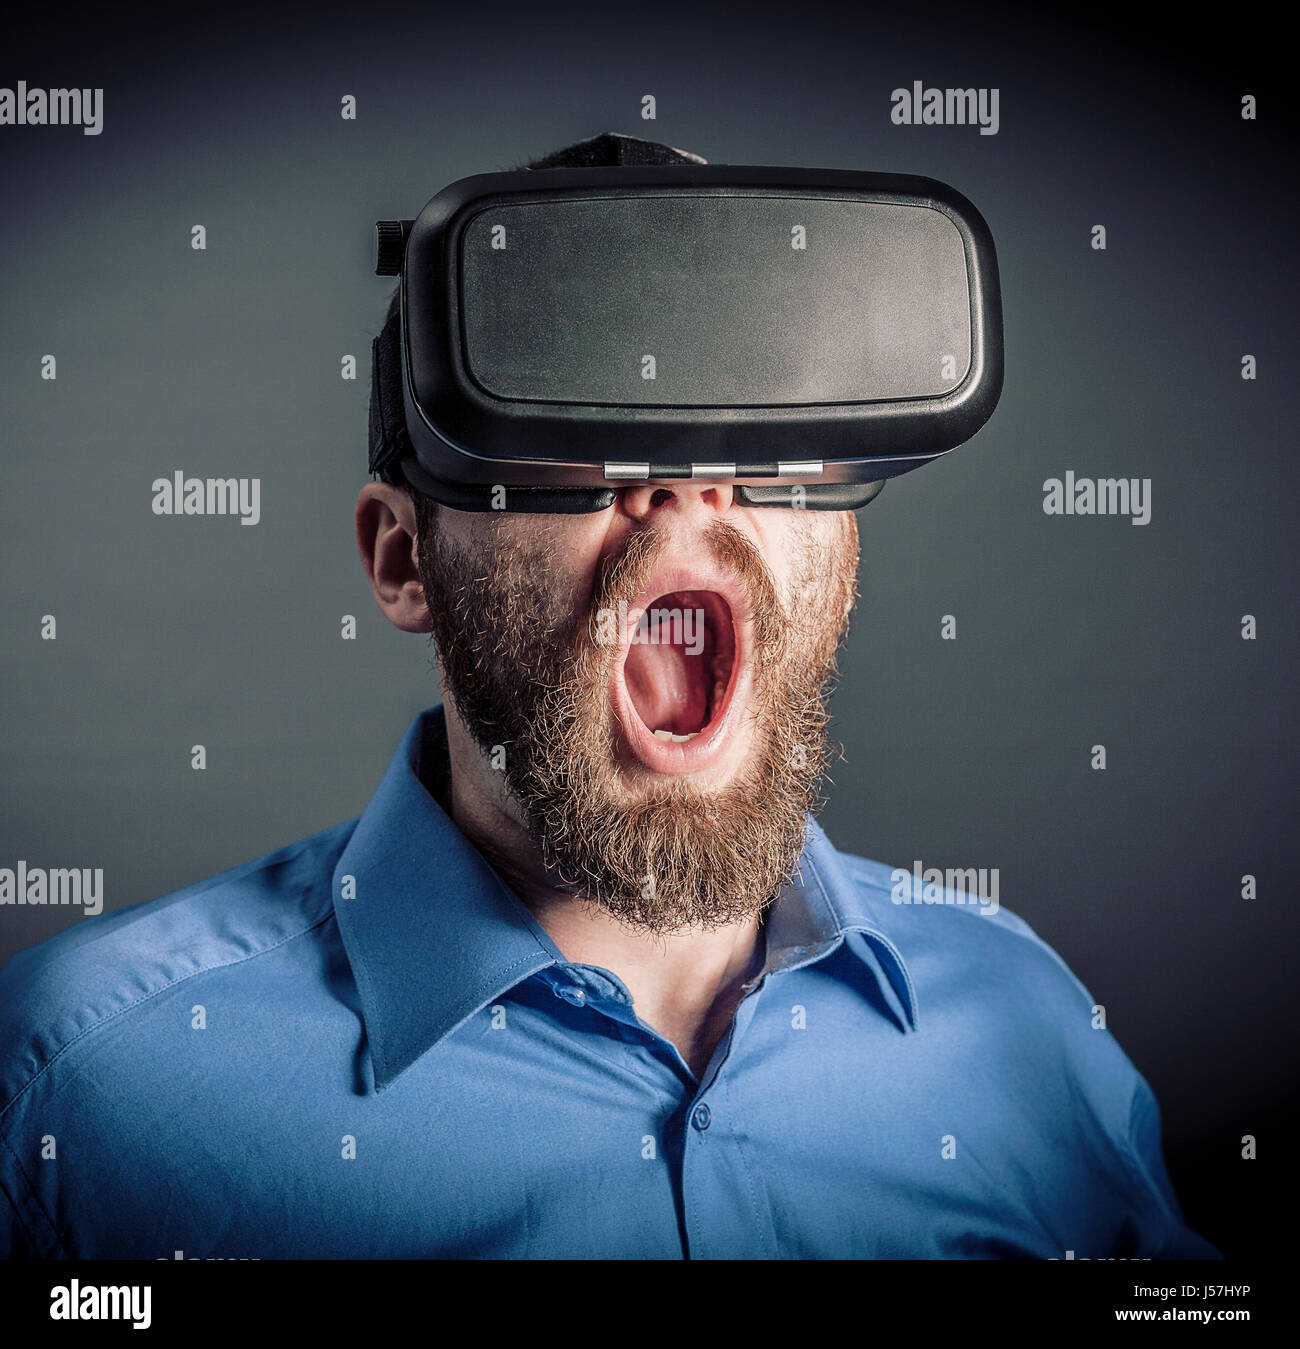 Surpris par la réalité virtuelle caucasian man portrait Banque D'Images